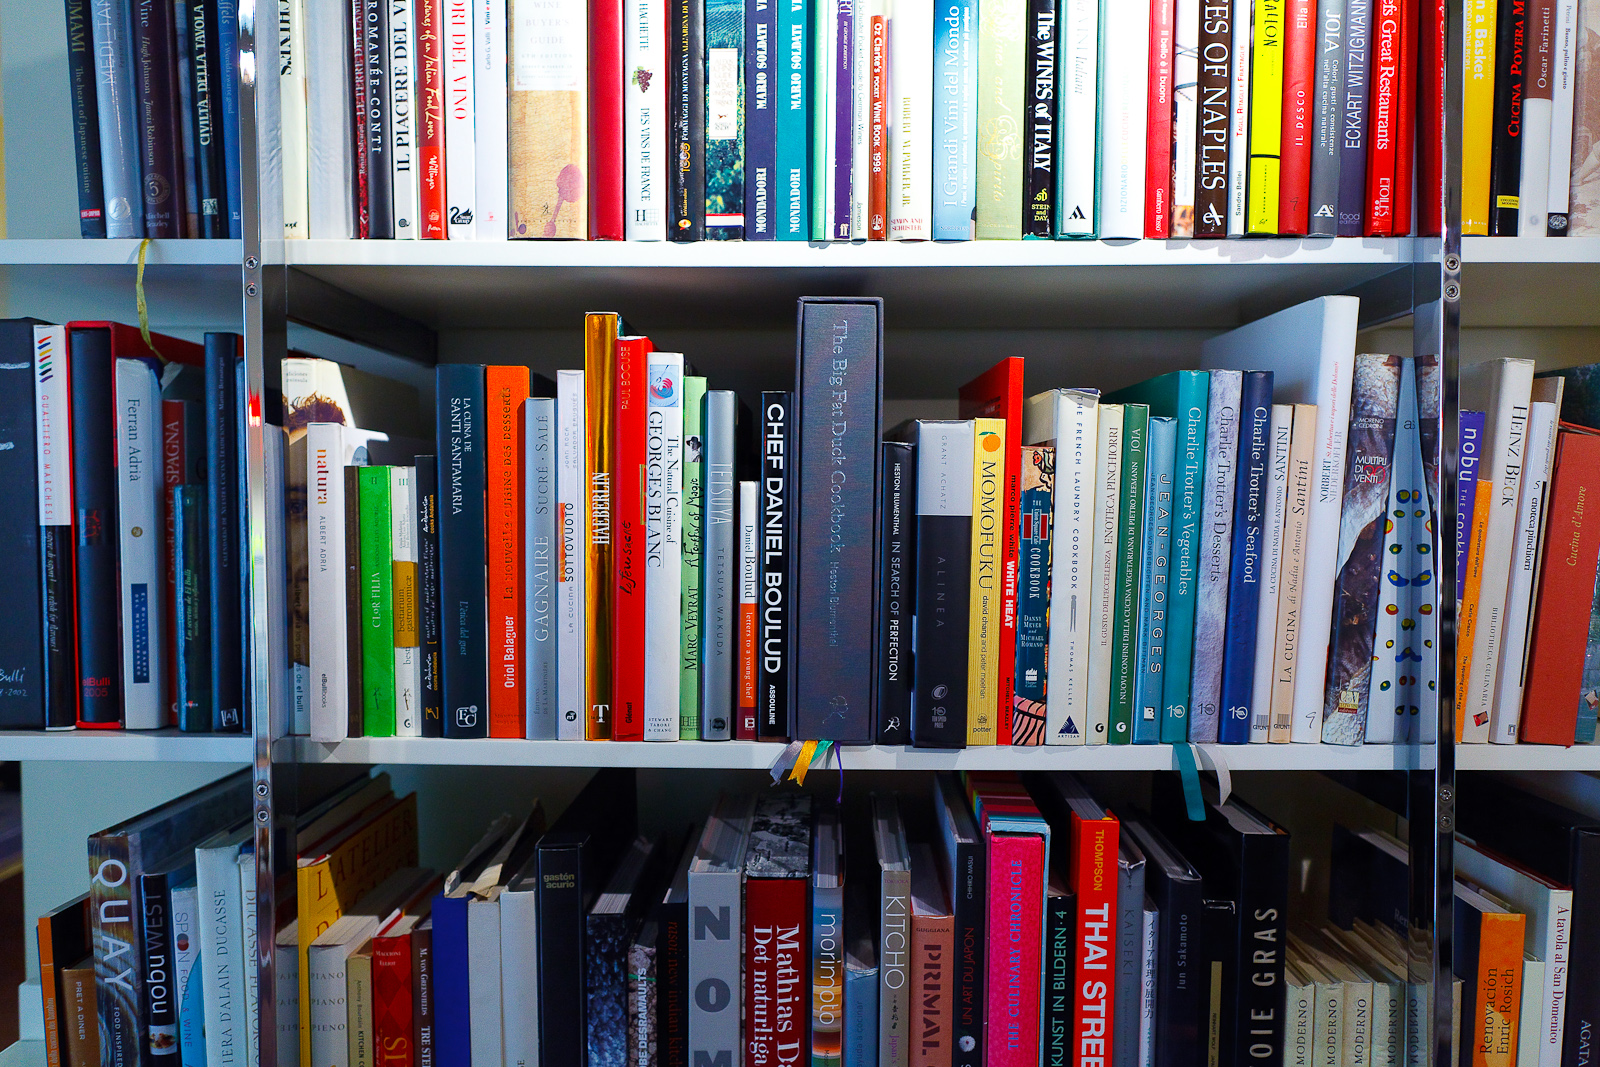 Book shelves at Osteria Francescana